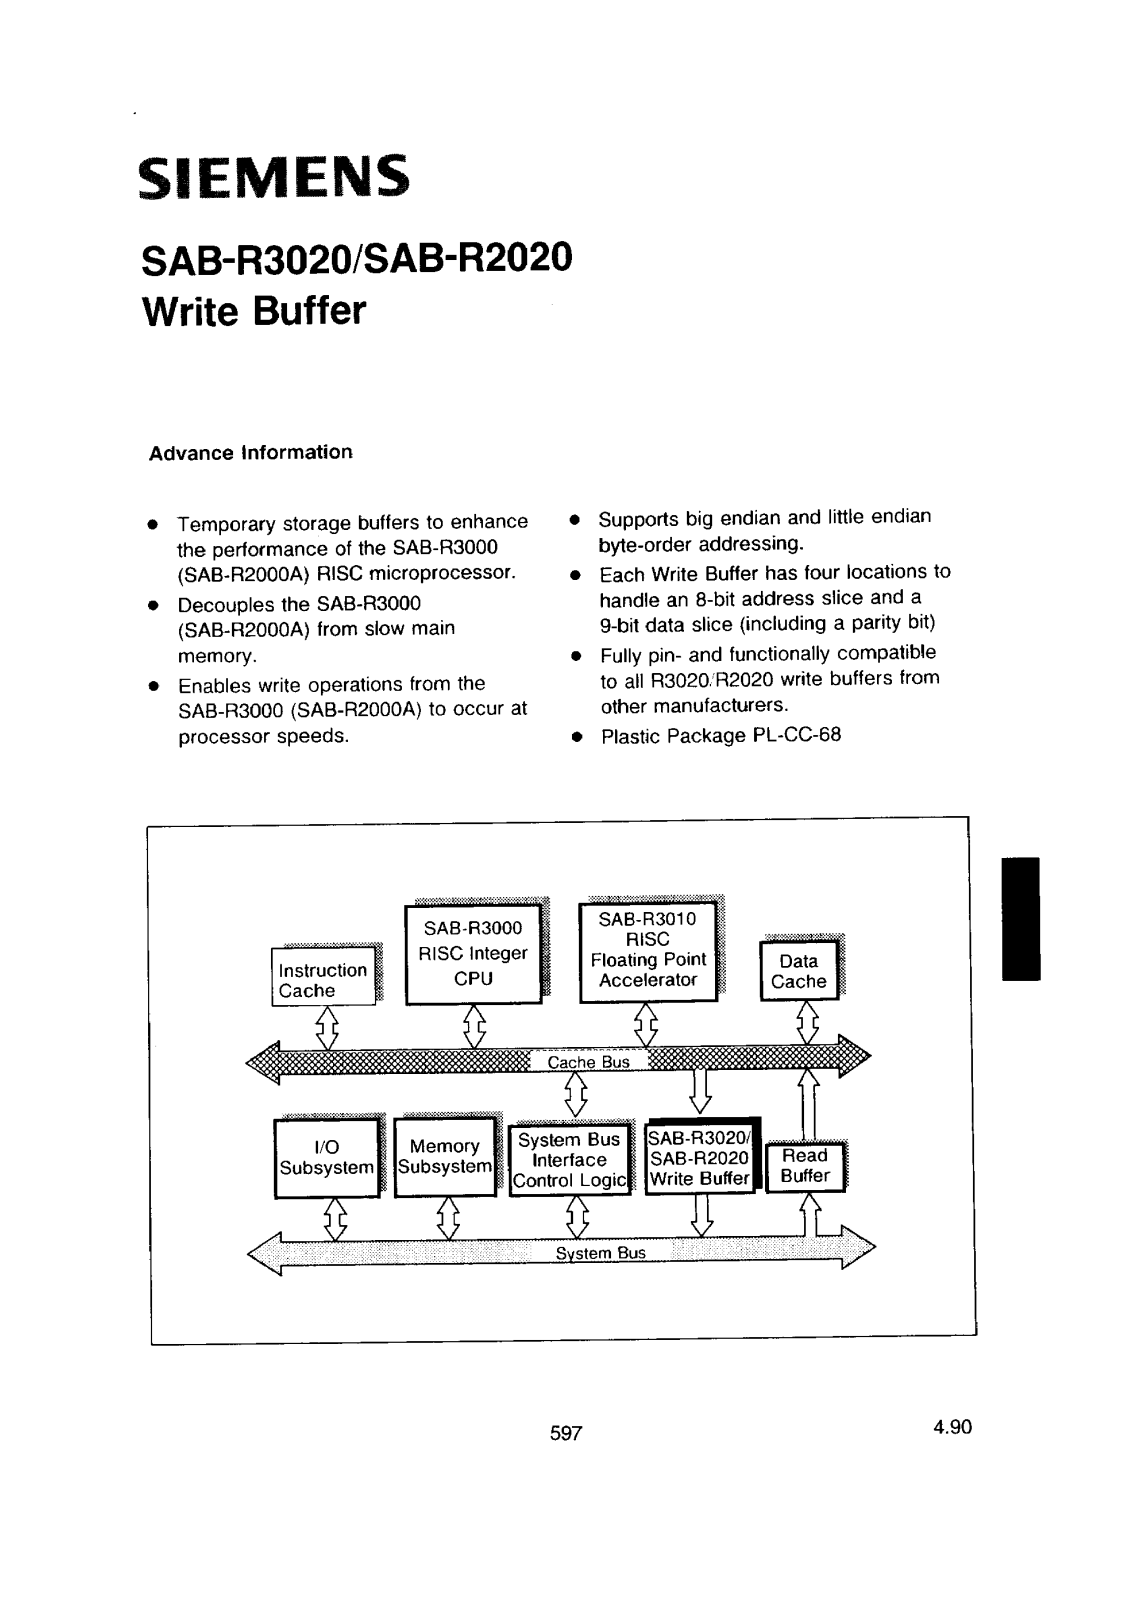 Siemens SAB-R2020A-16-N, SAB-R3020A-25-N Datasheet